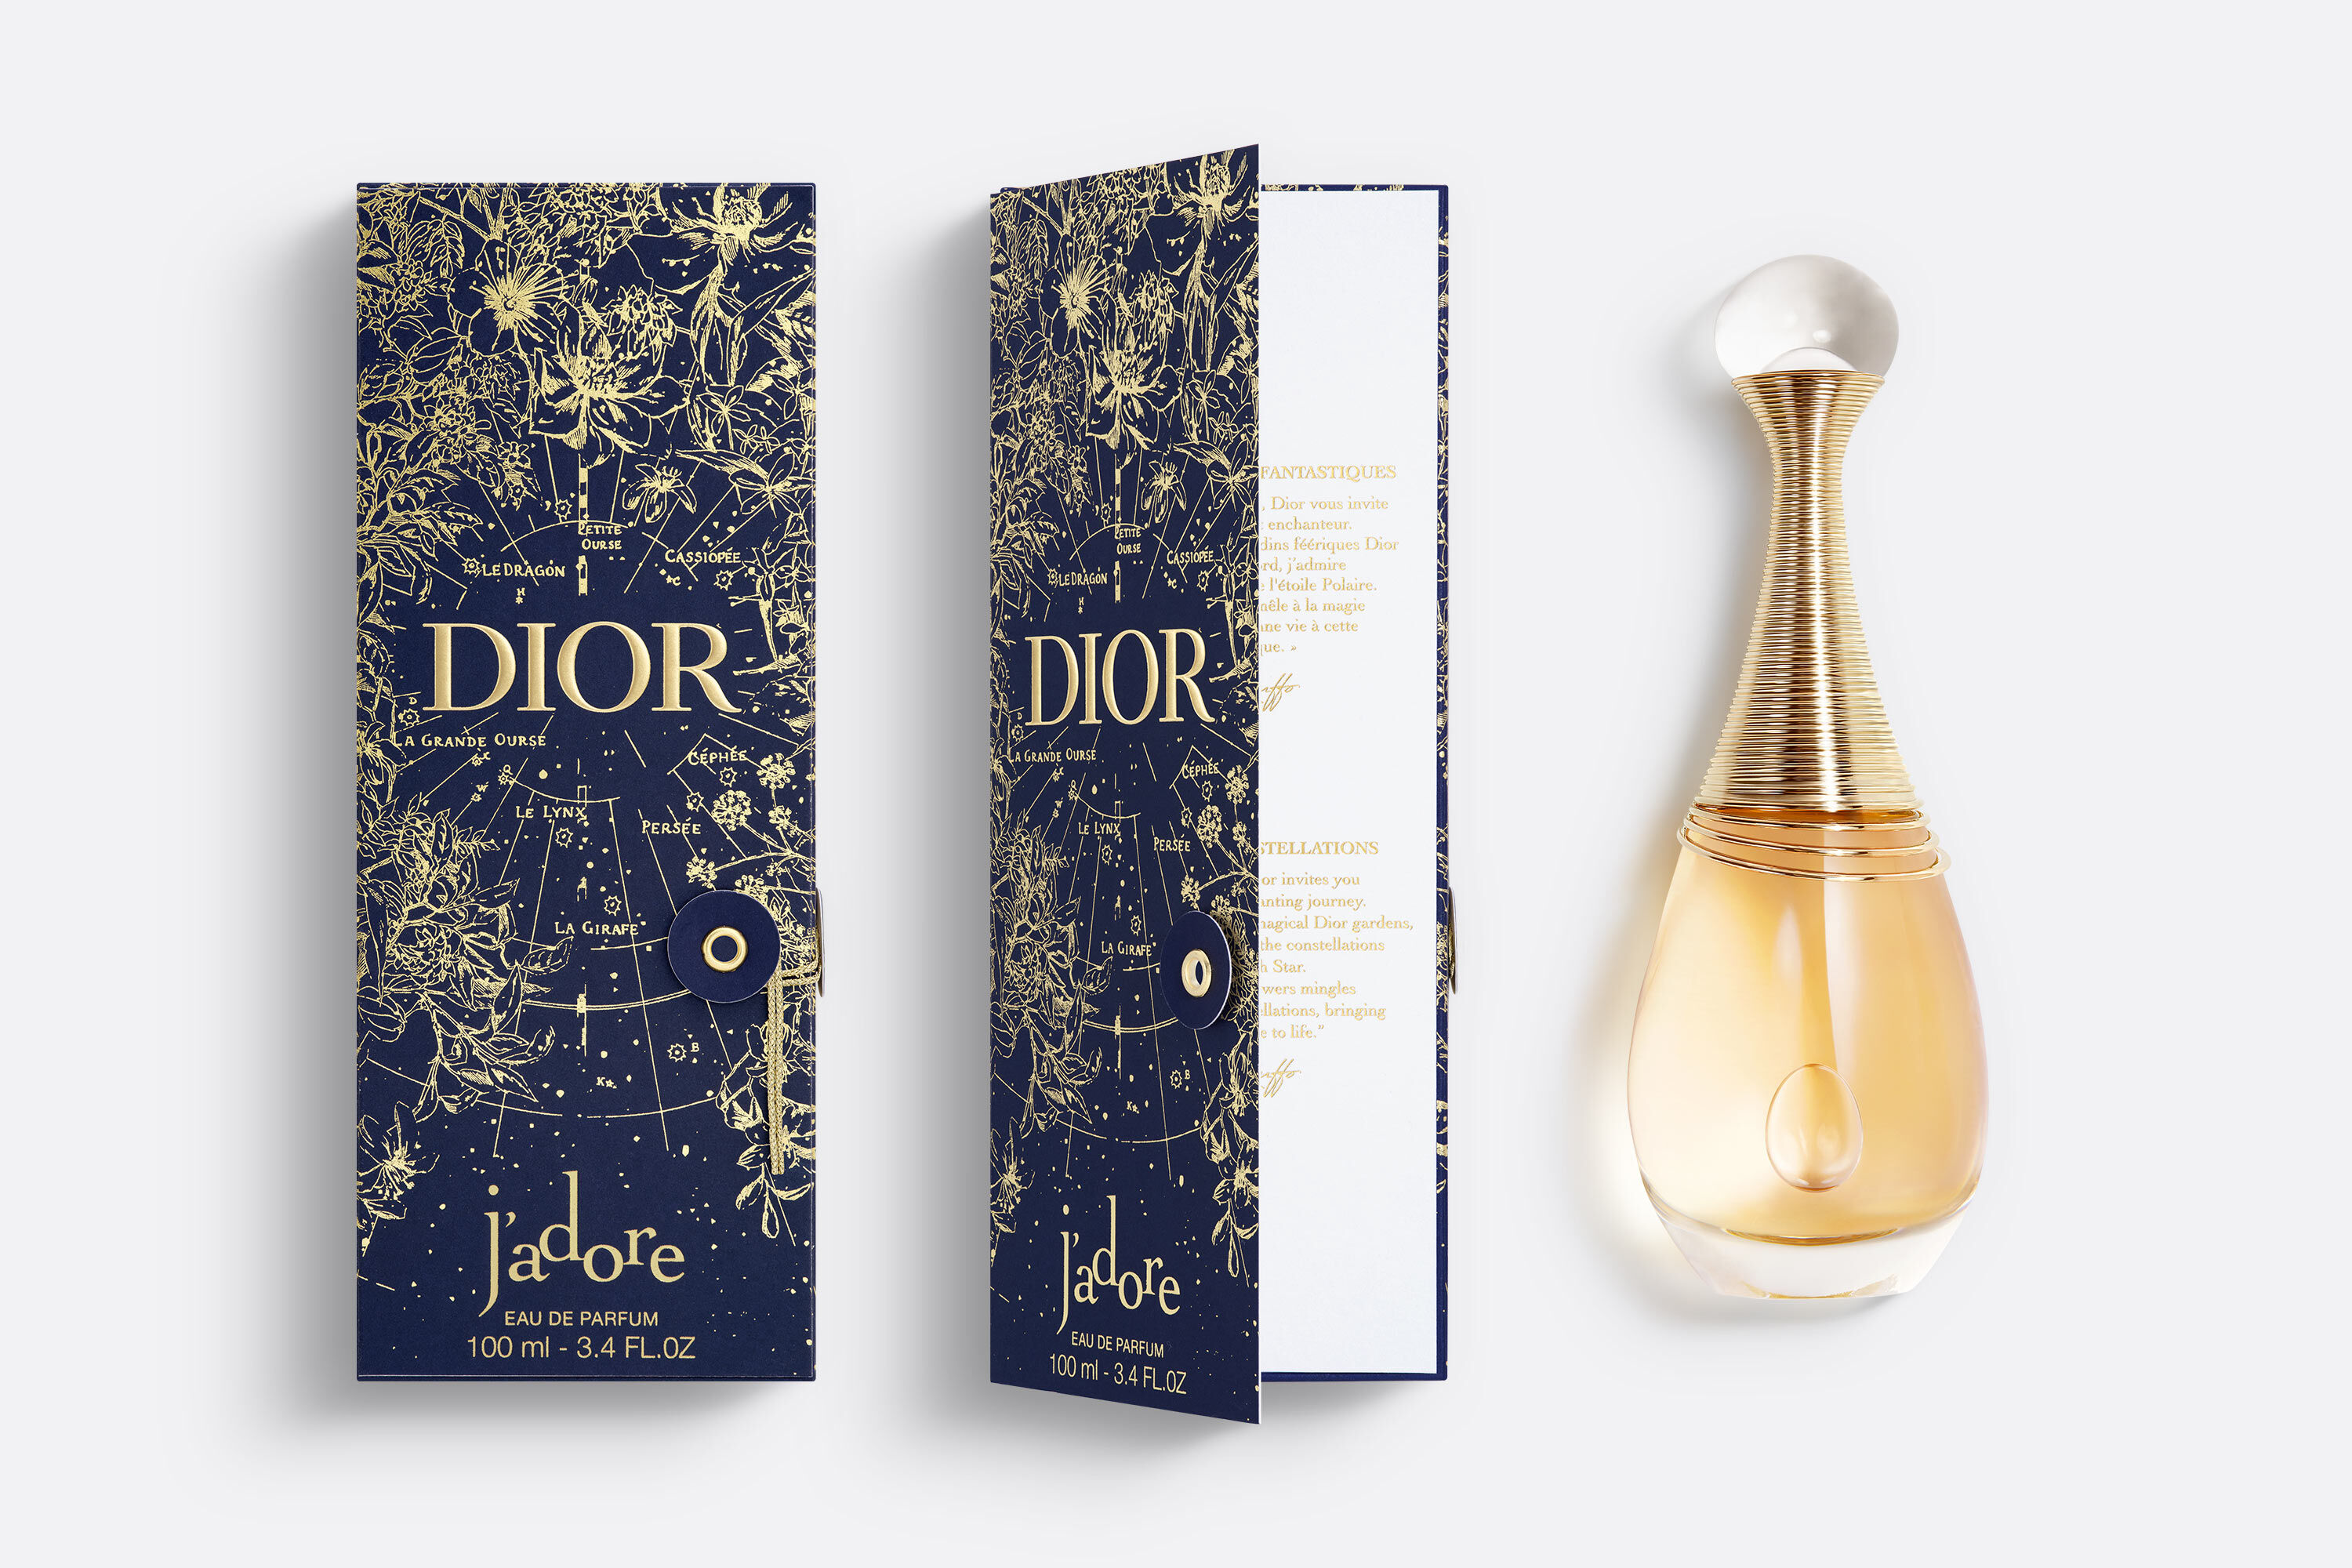 Christian Dior J'Adore Dior Monogram Silk Scarf